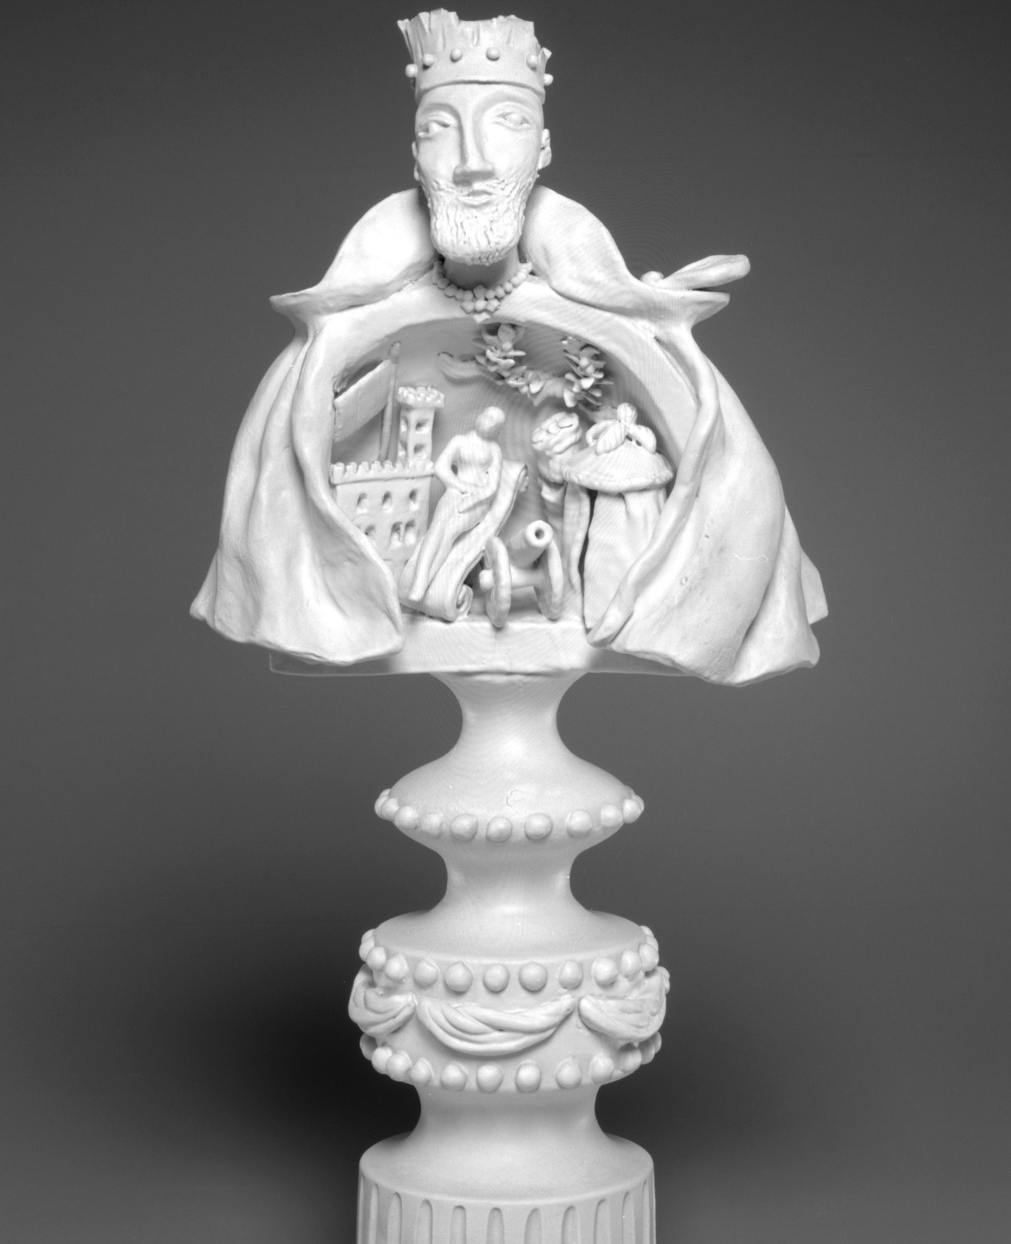 scultura bianca di busto di uomo che al suo interno contiene una scena con figurine